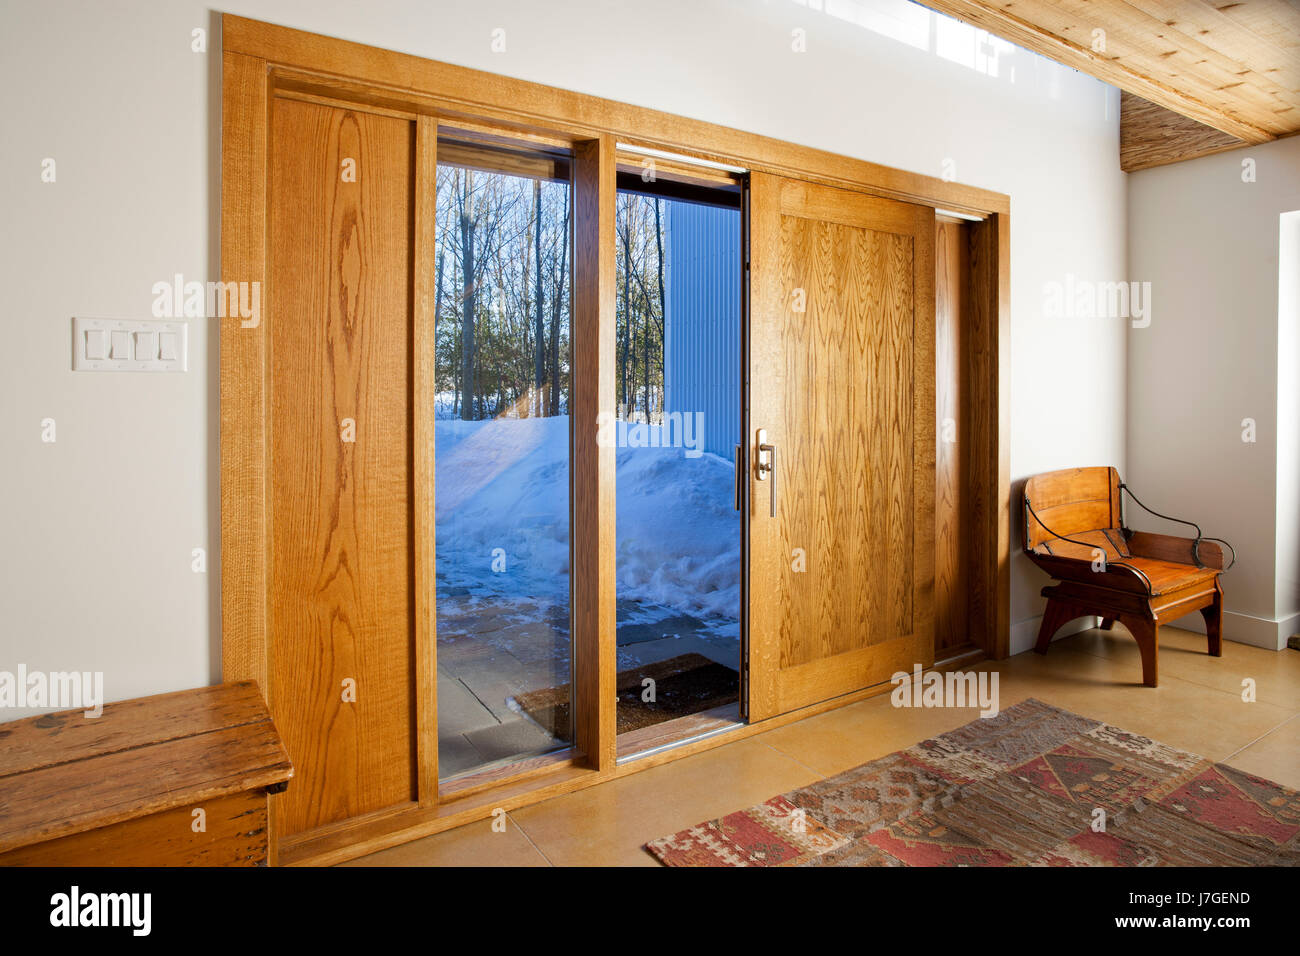 North America, Canada, Ontario, sliding oak entrance door Stock Photo